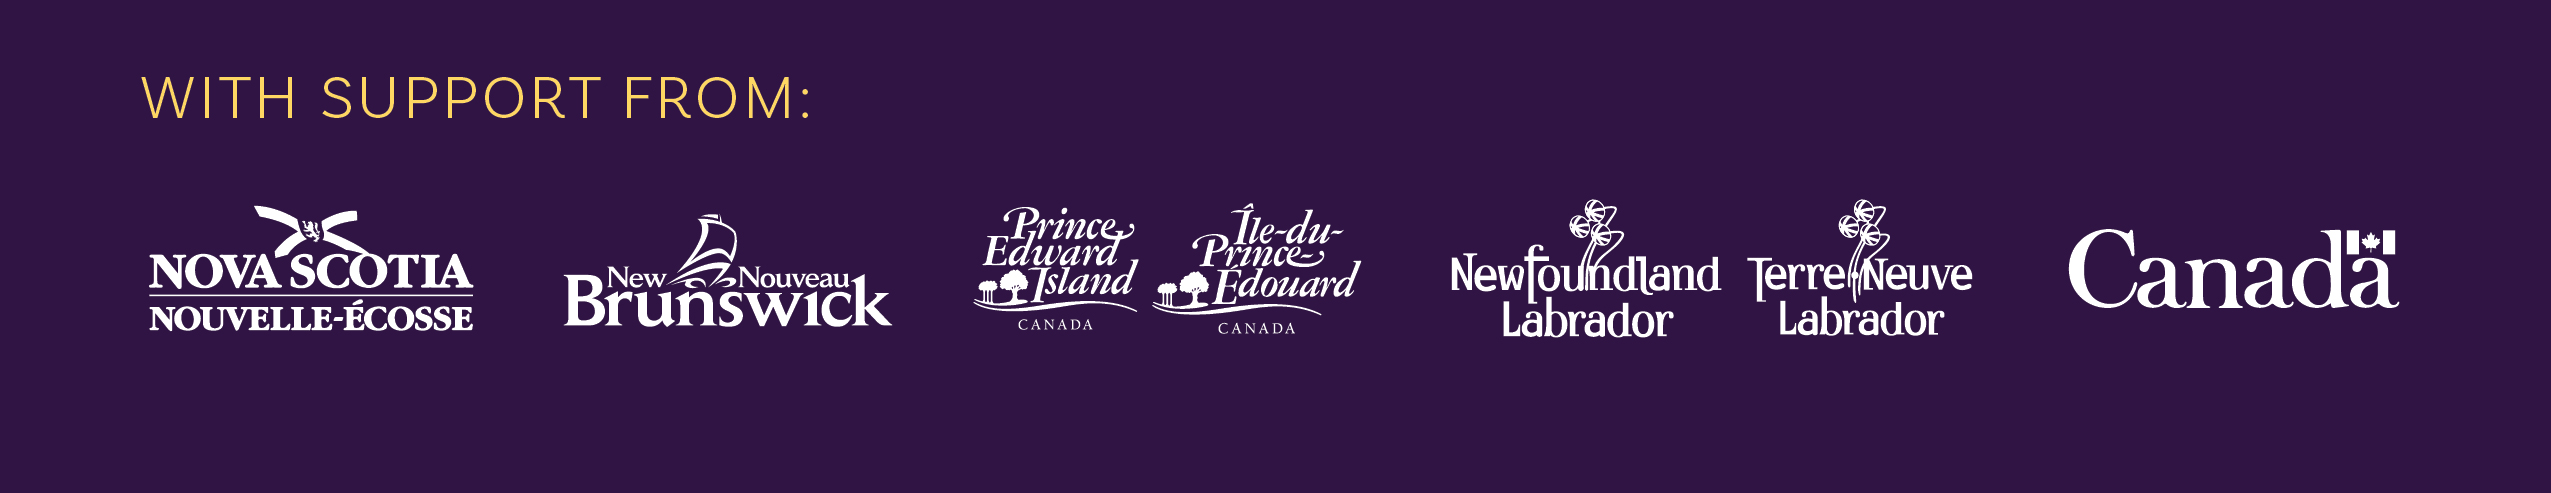 Logos for the provinces: Nova Scotia, New Brunswick, Prince Edward Island, Newfoundland and Labrador. Logo for the government of Canada.